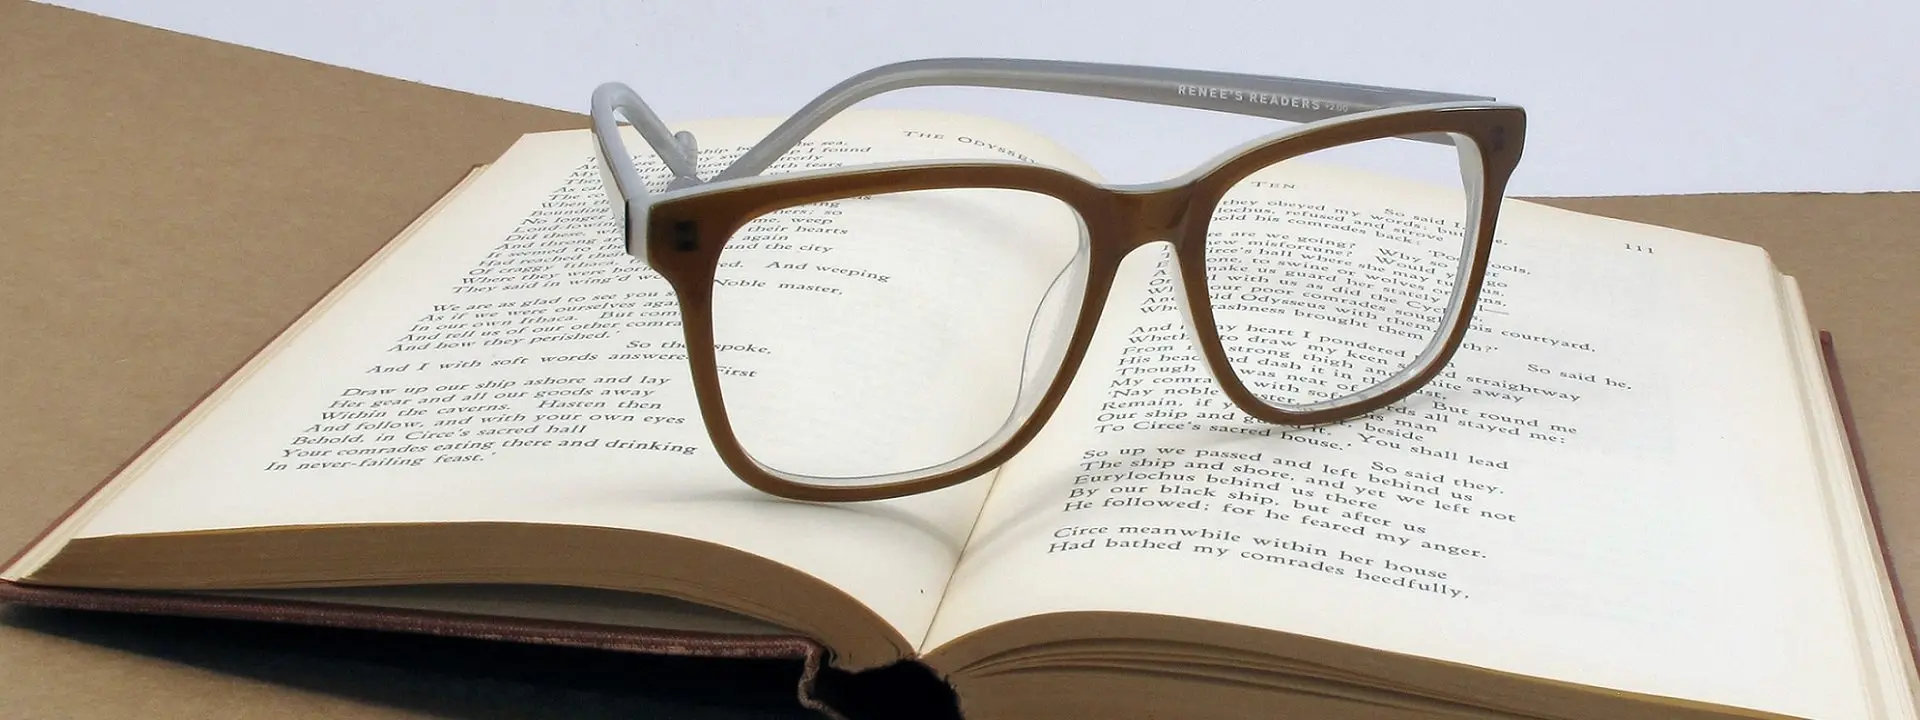 نکات مهم در عدسی و شماره عینک مطالعه